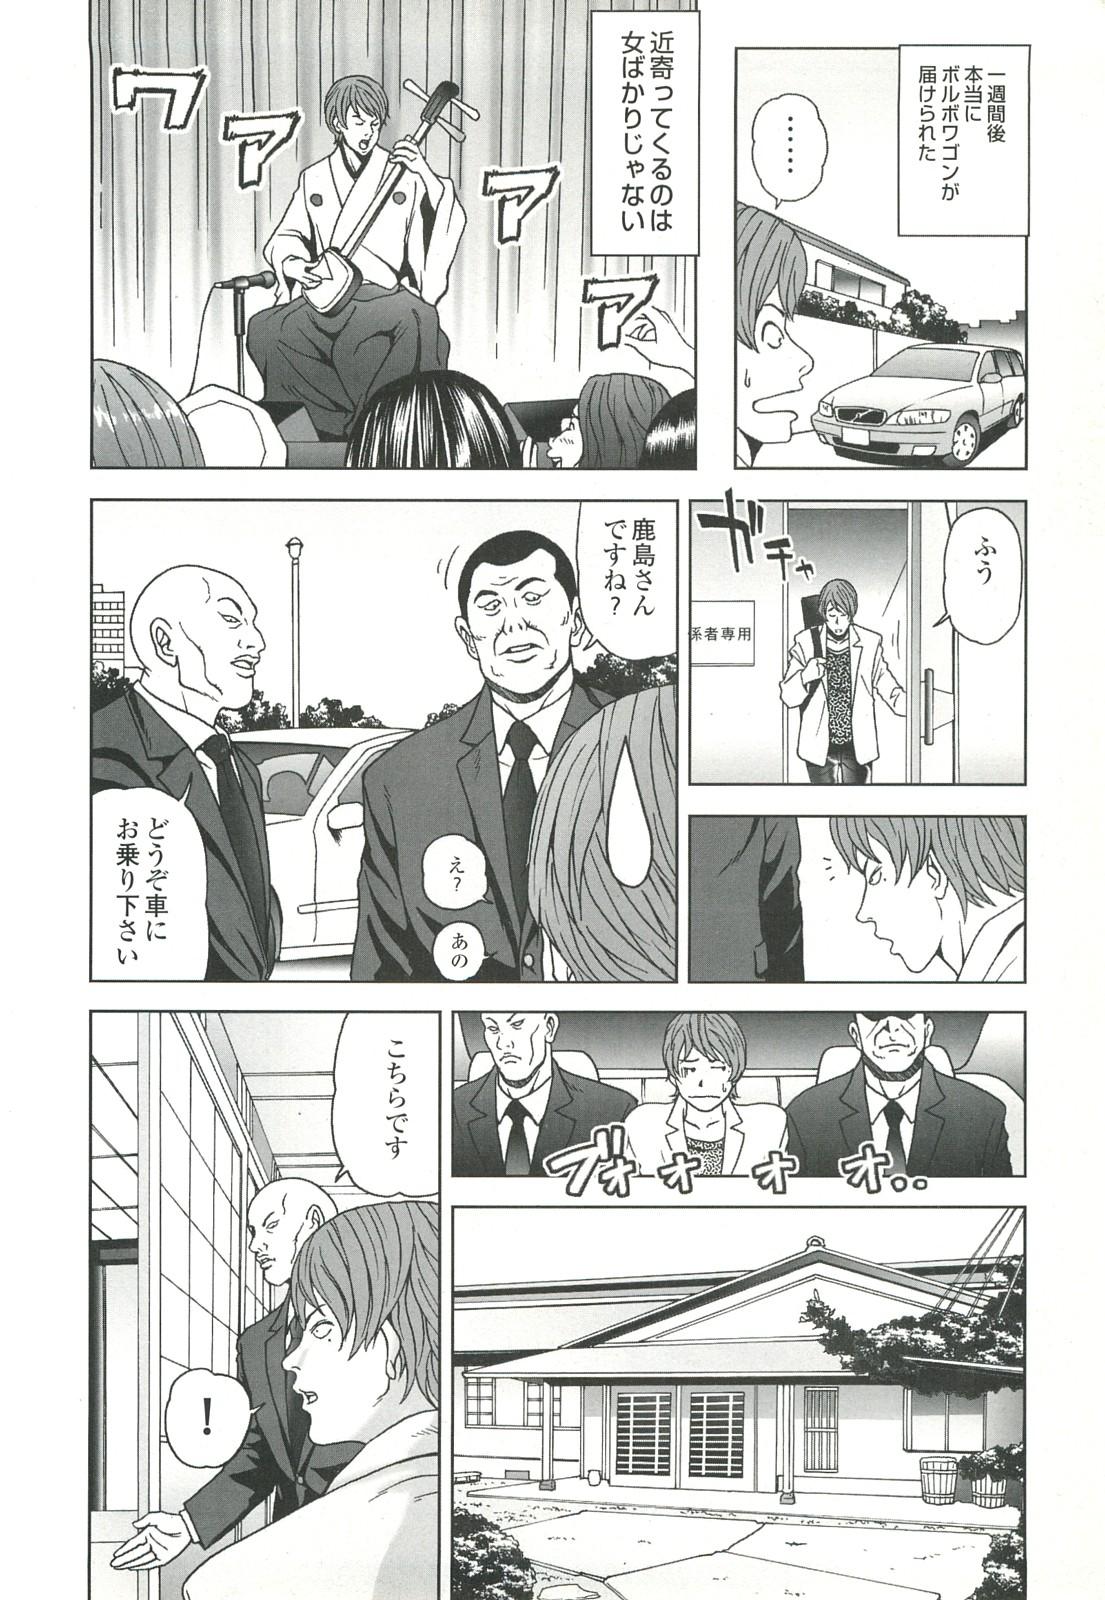 コミック裏モノJAPAN Vol.18 今井のりたつスペシャル号 37